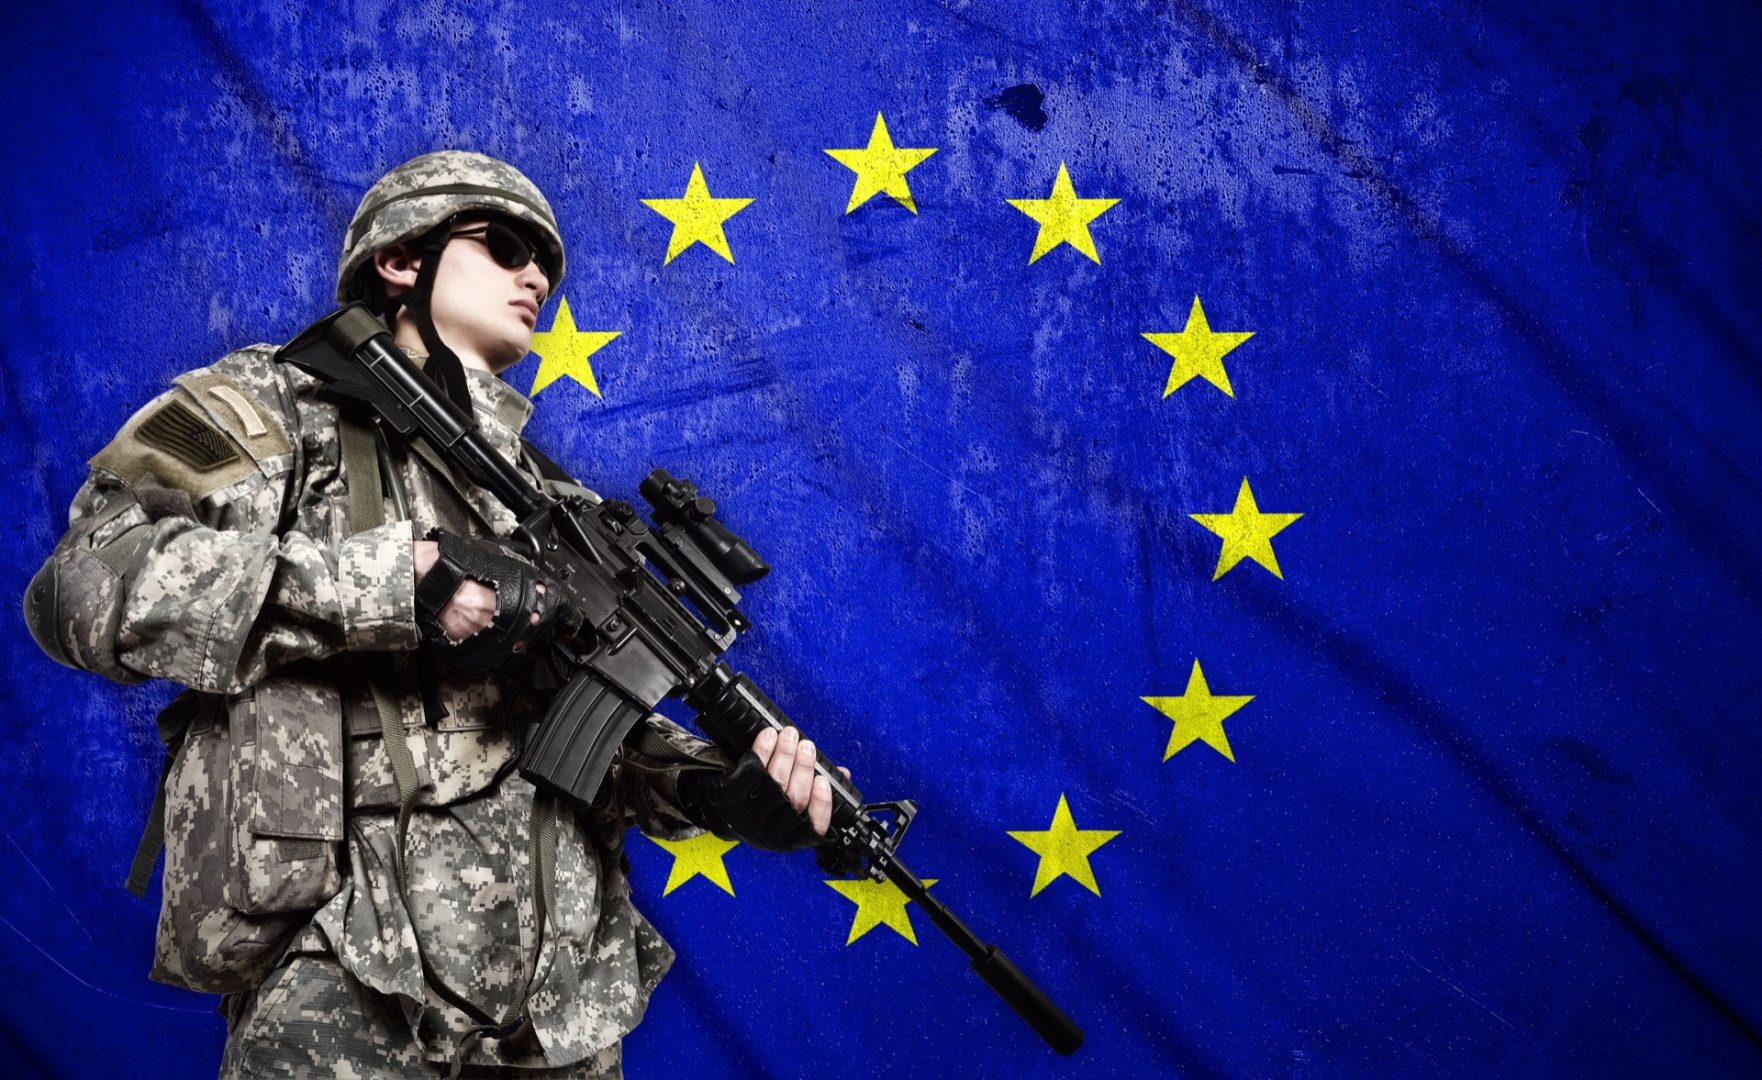 أمن أوروبا ـ جيش أوروبي موحد، الخلافات والانقسامات. بقلم حازم سعيد